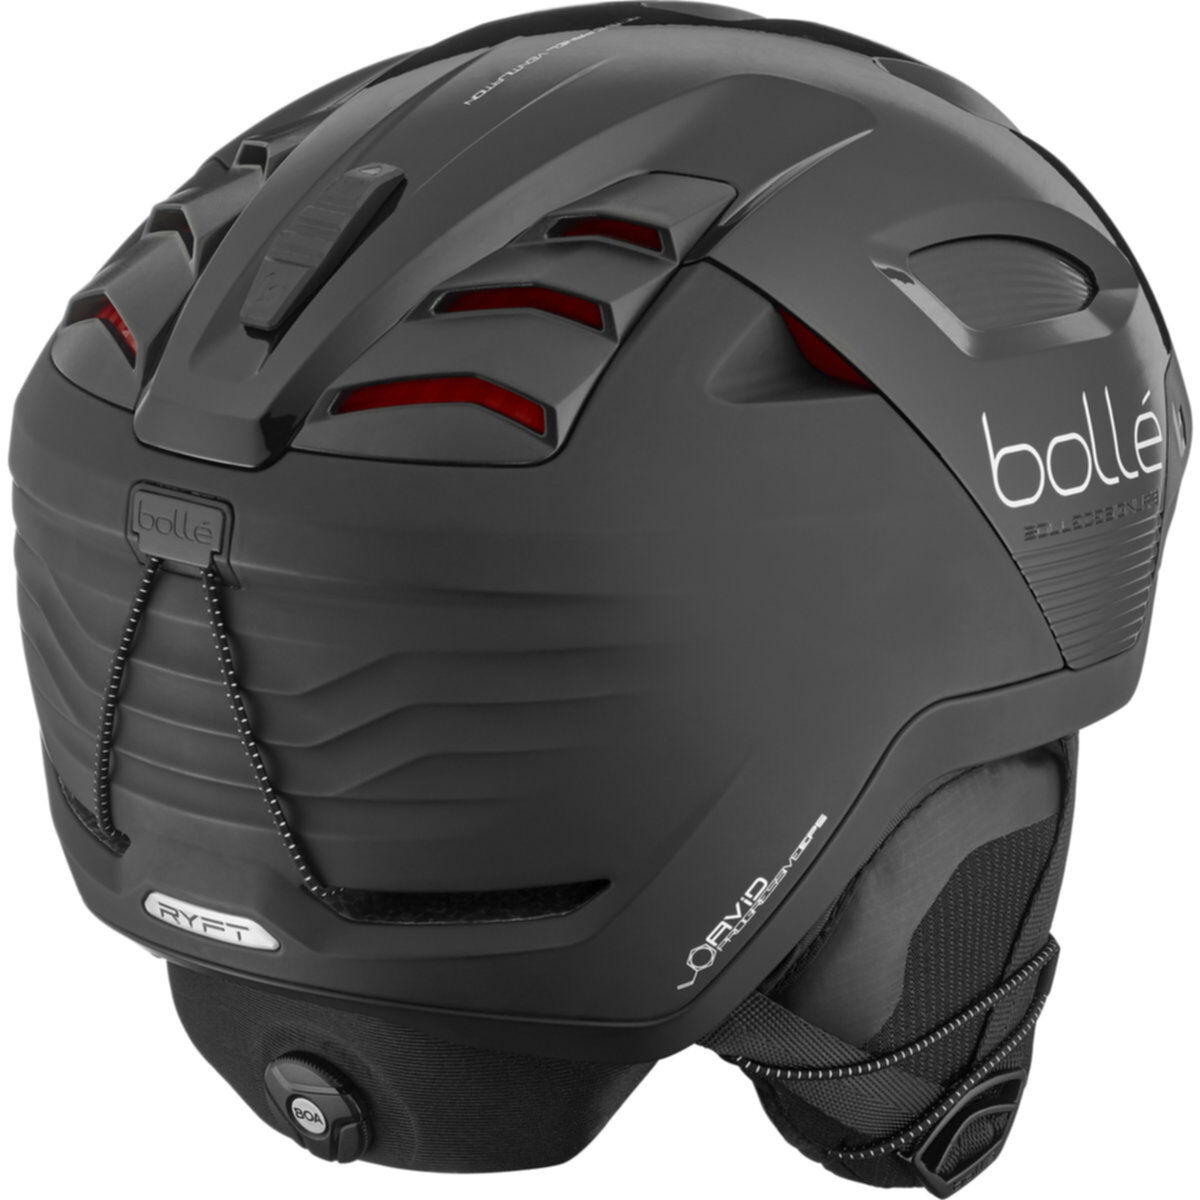 Bolle ski/snowboarding helmet 